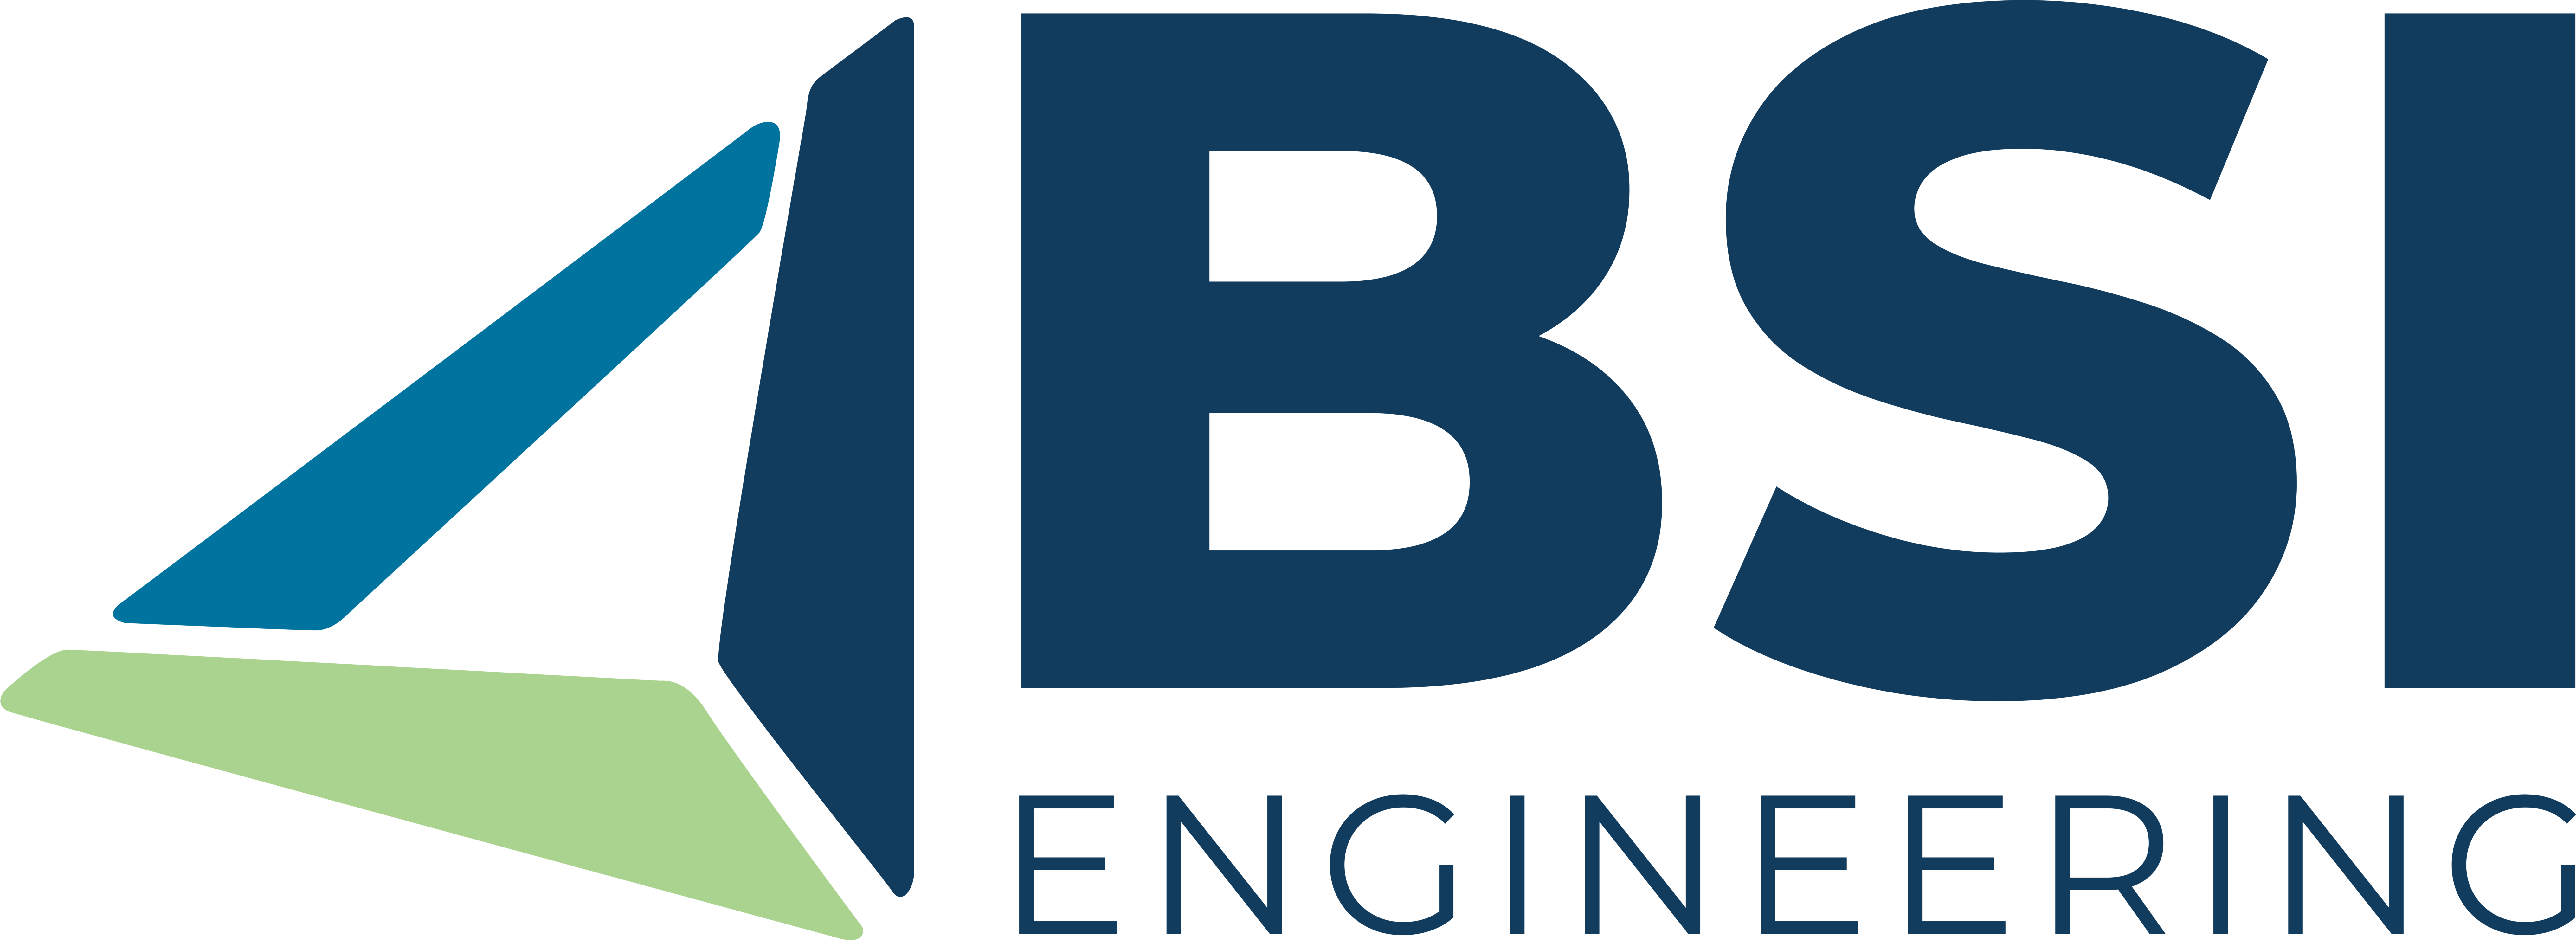 BSI Engineering Company Logo